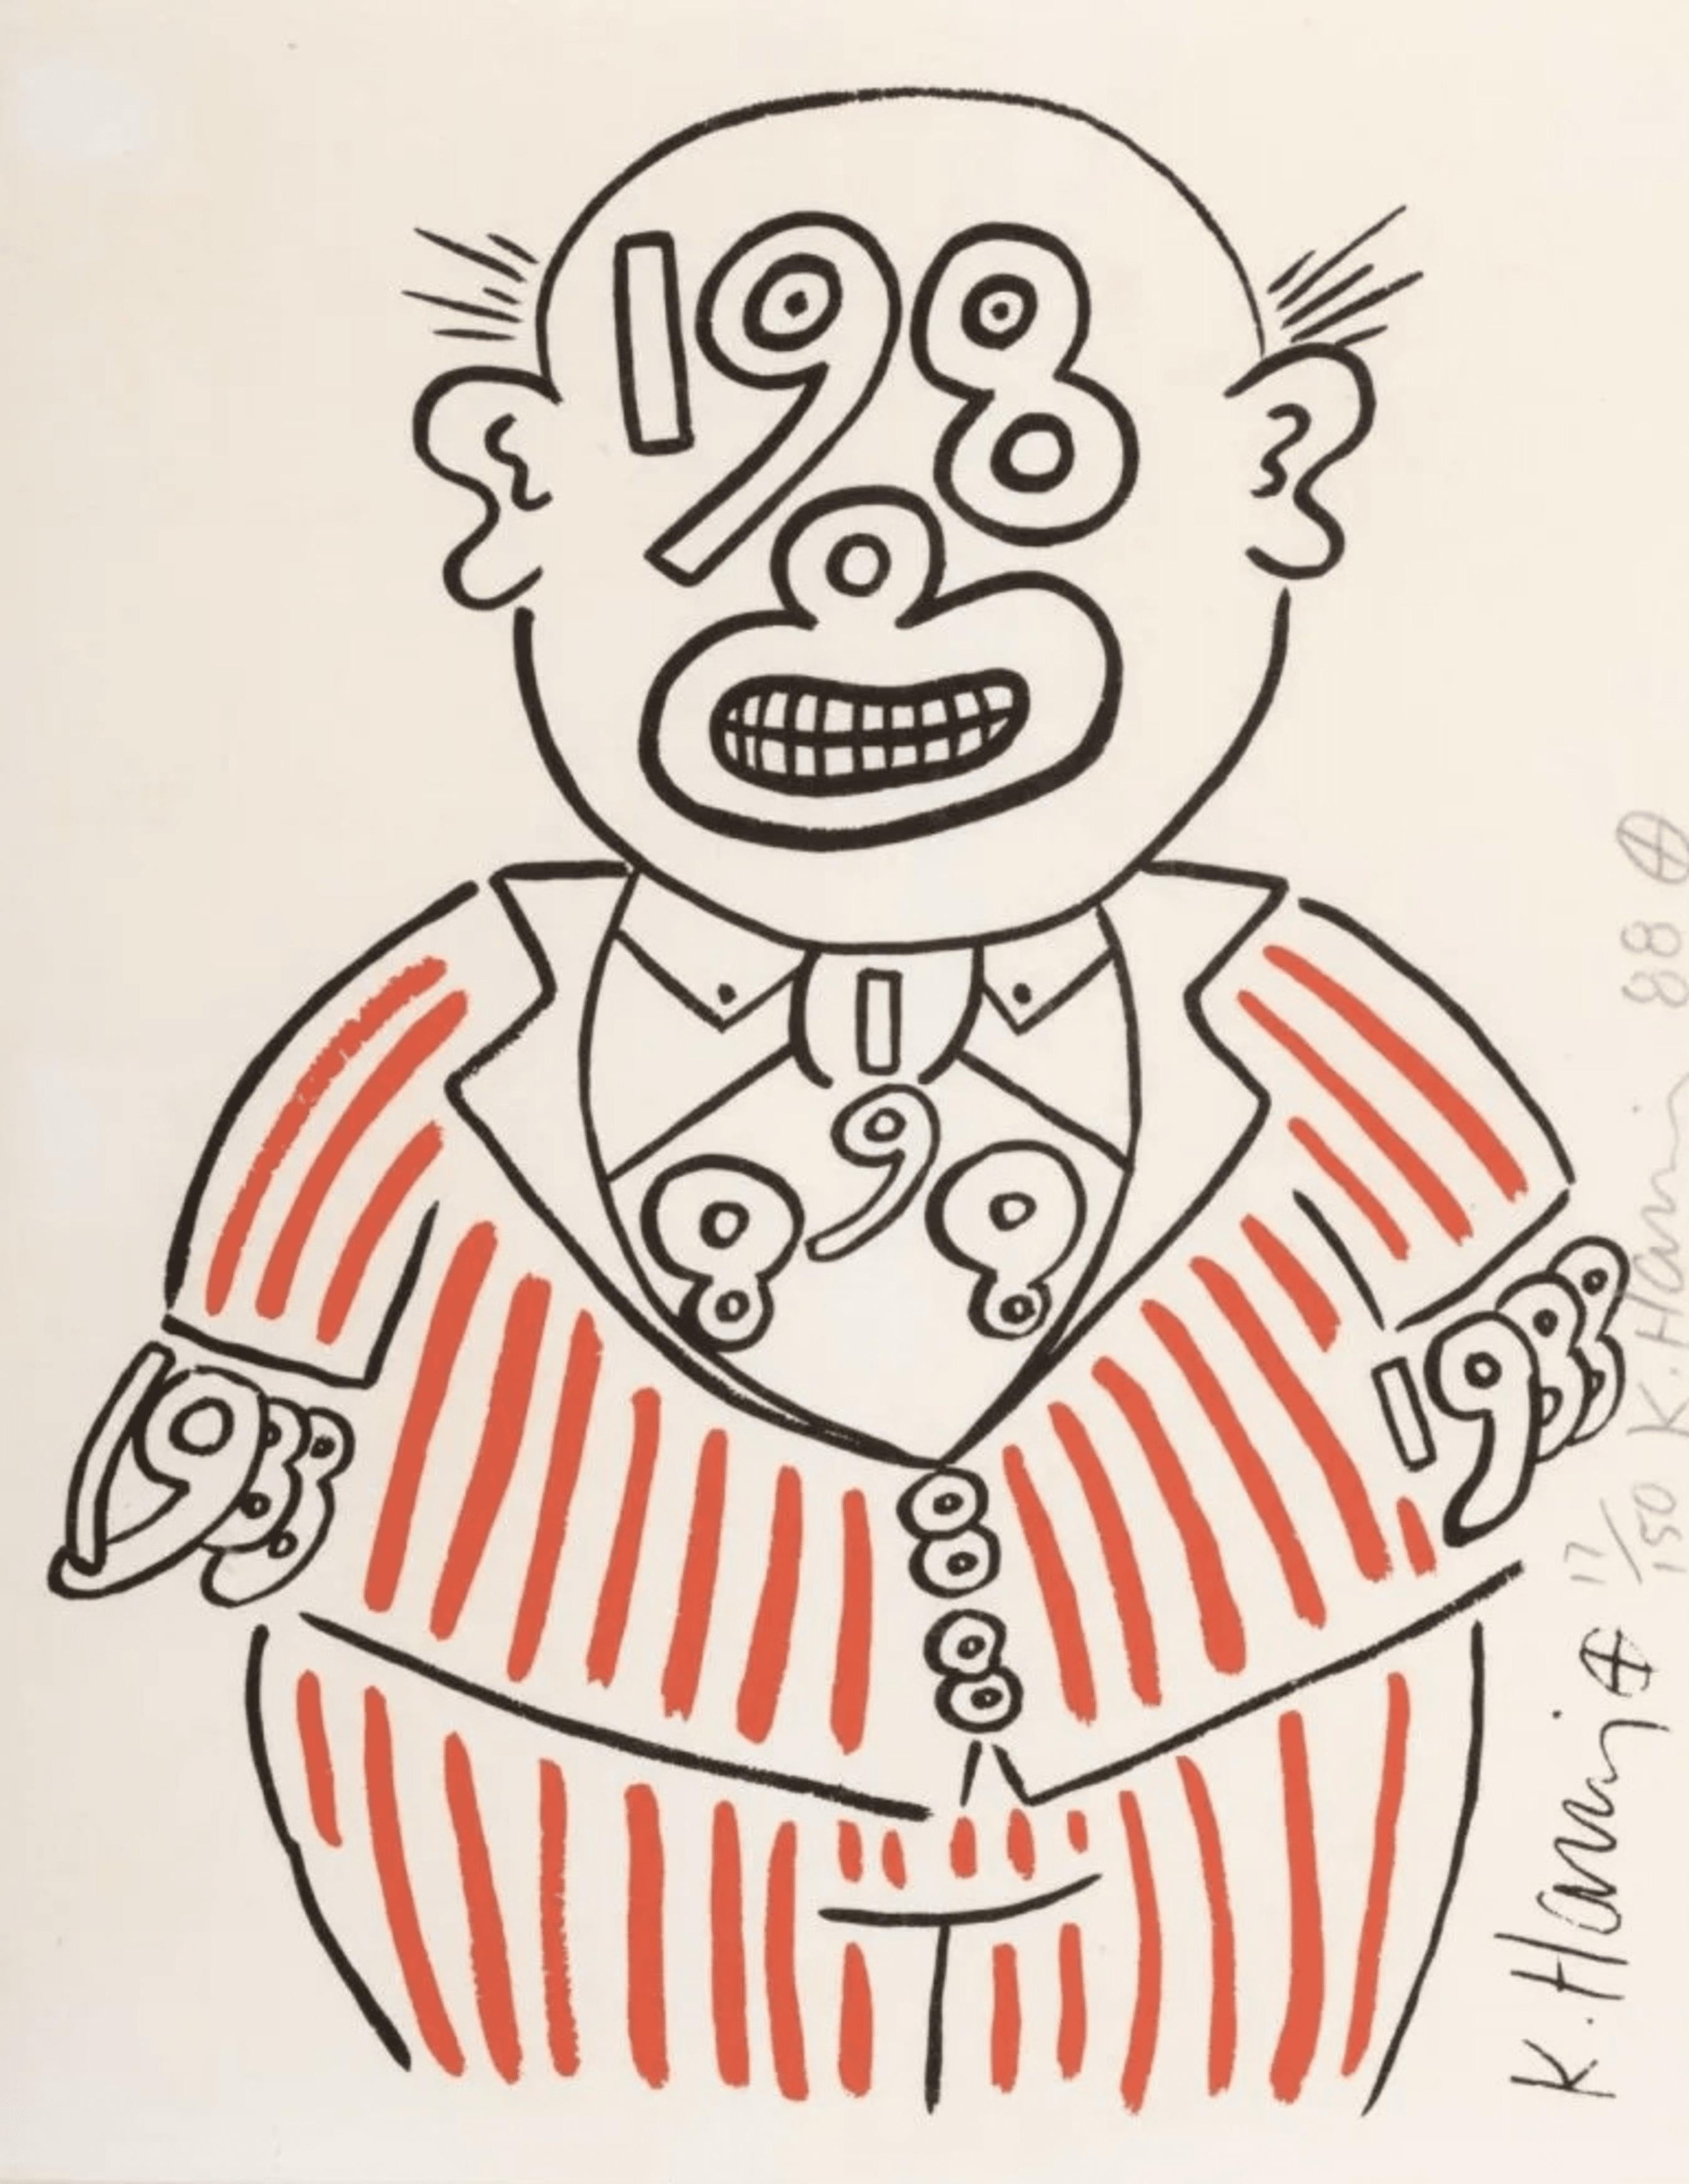 1988 Man - Print by Keith Haring